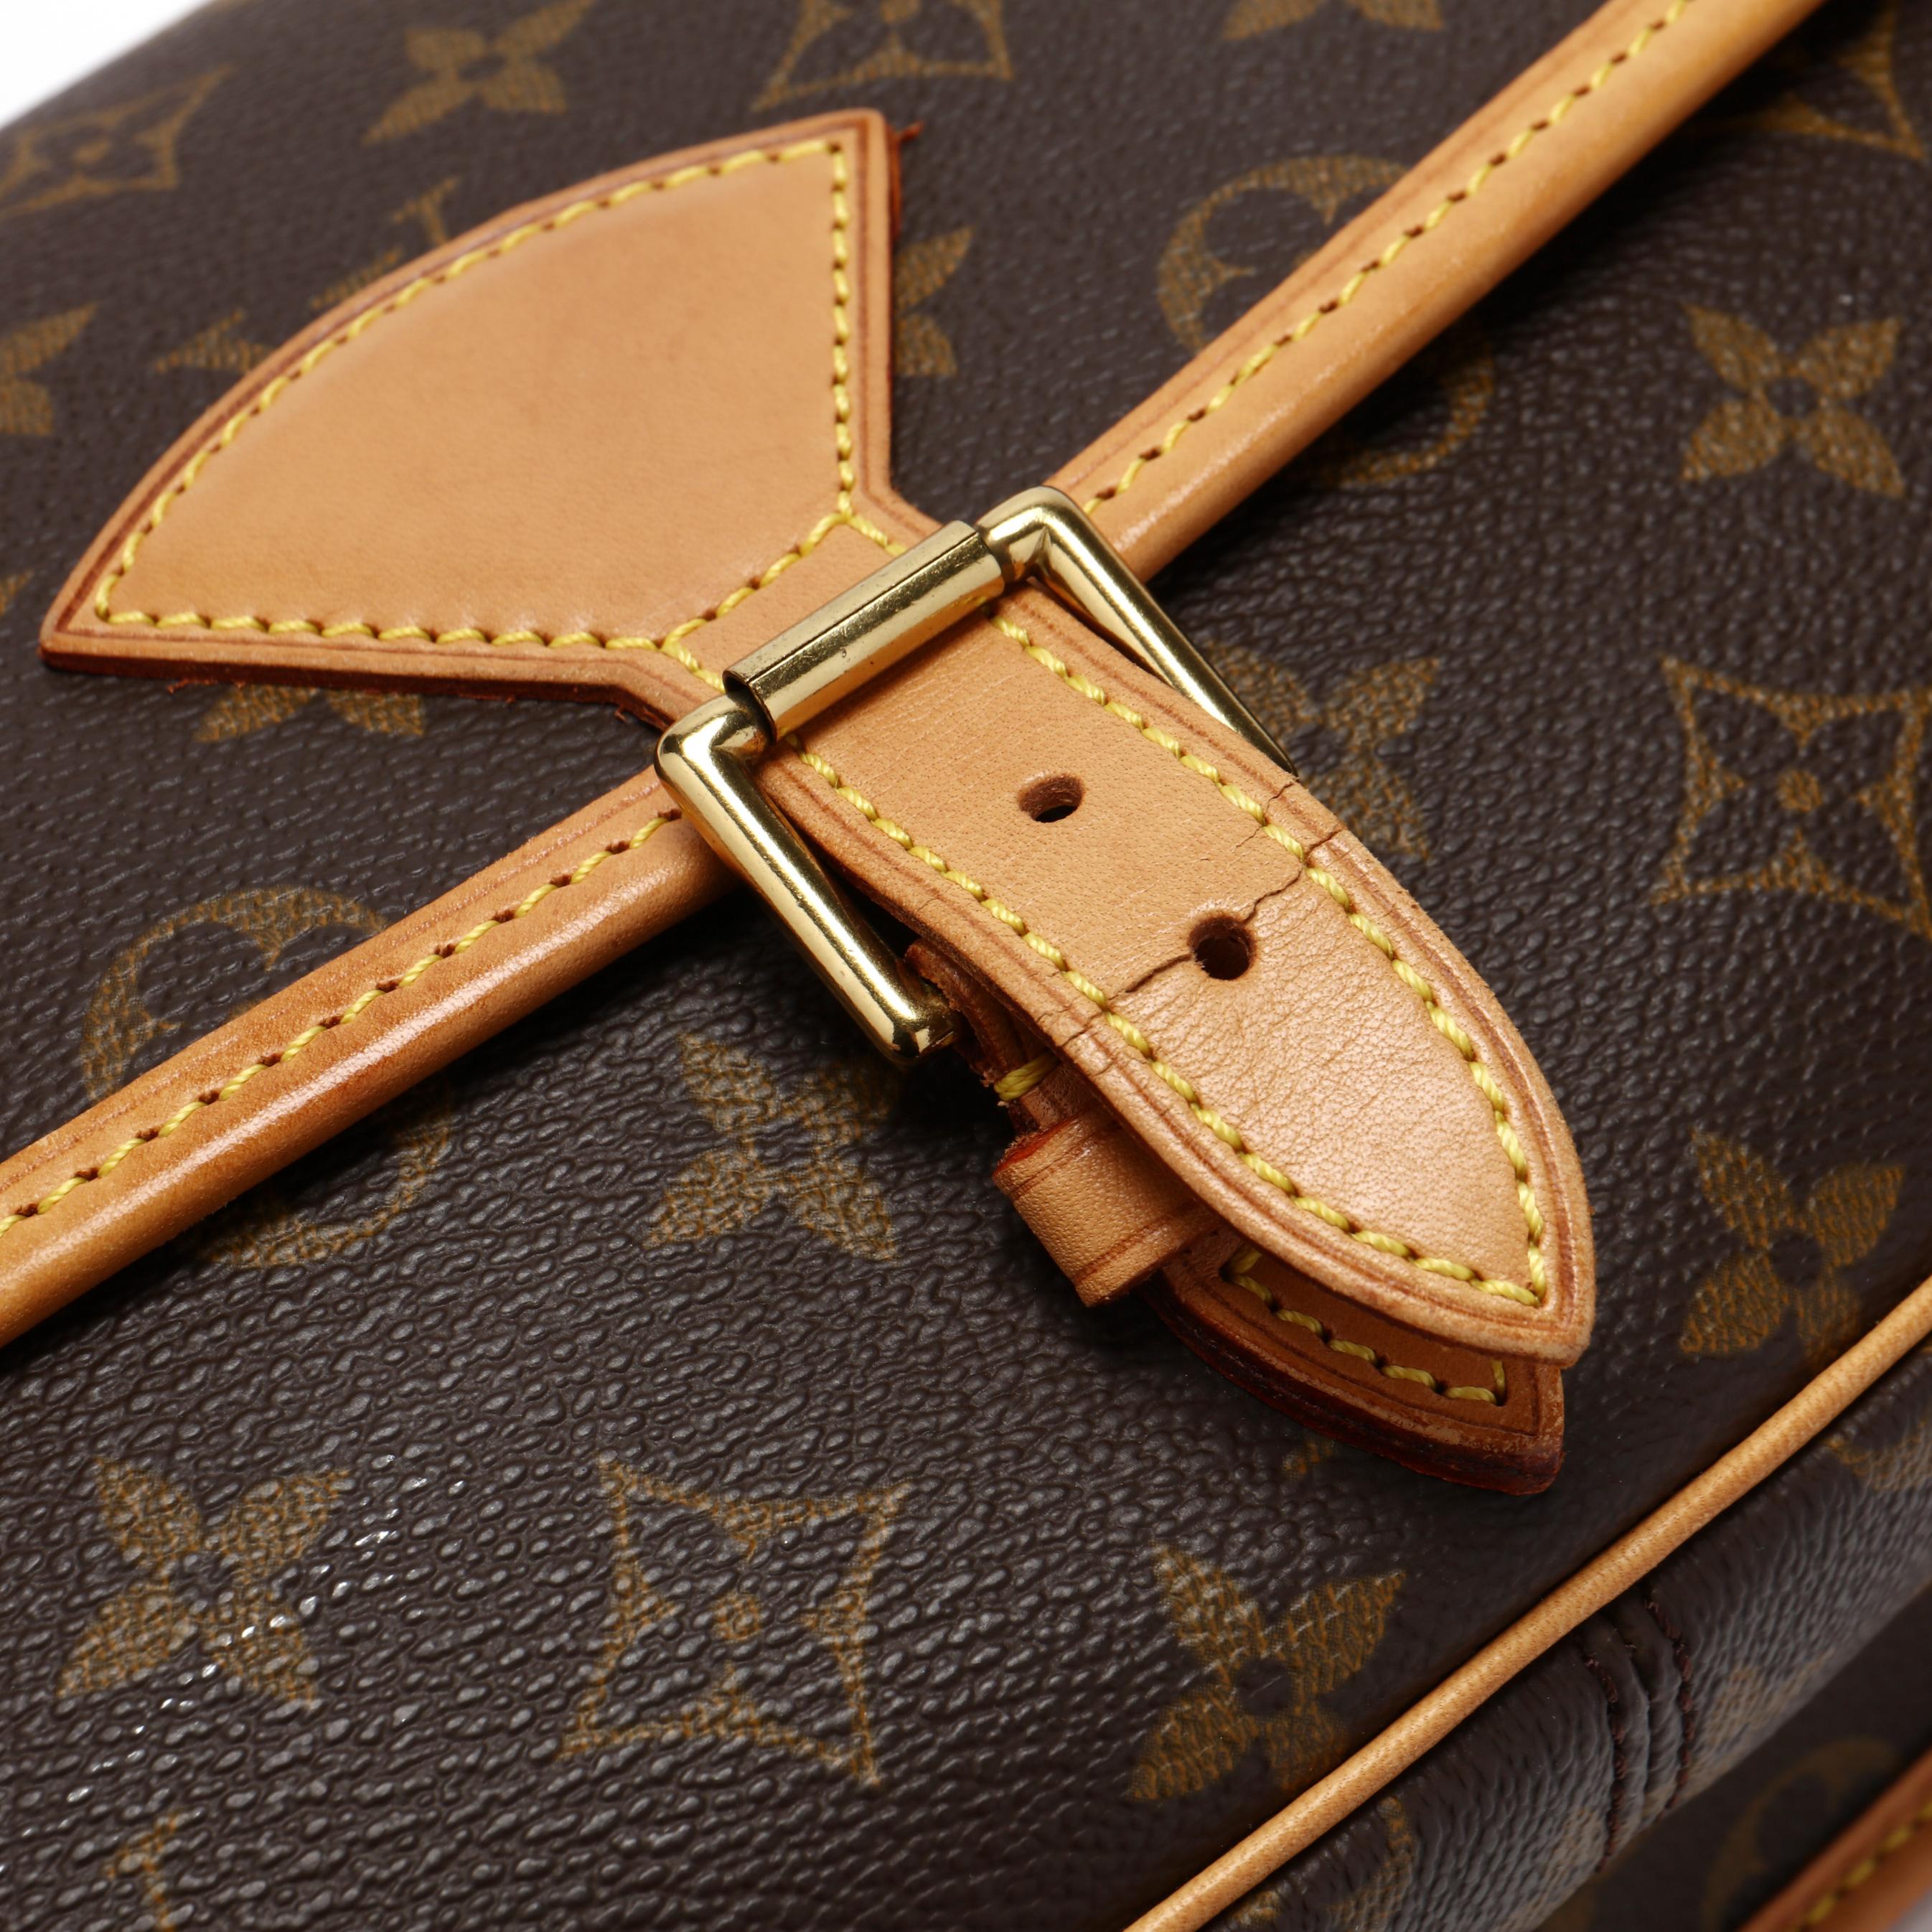 Sold at Auction: Louis Brown, Louis Vuitton - Large Pochette Shoulder Bag -  Brown Monogram Adjustable Strap